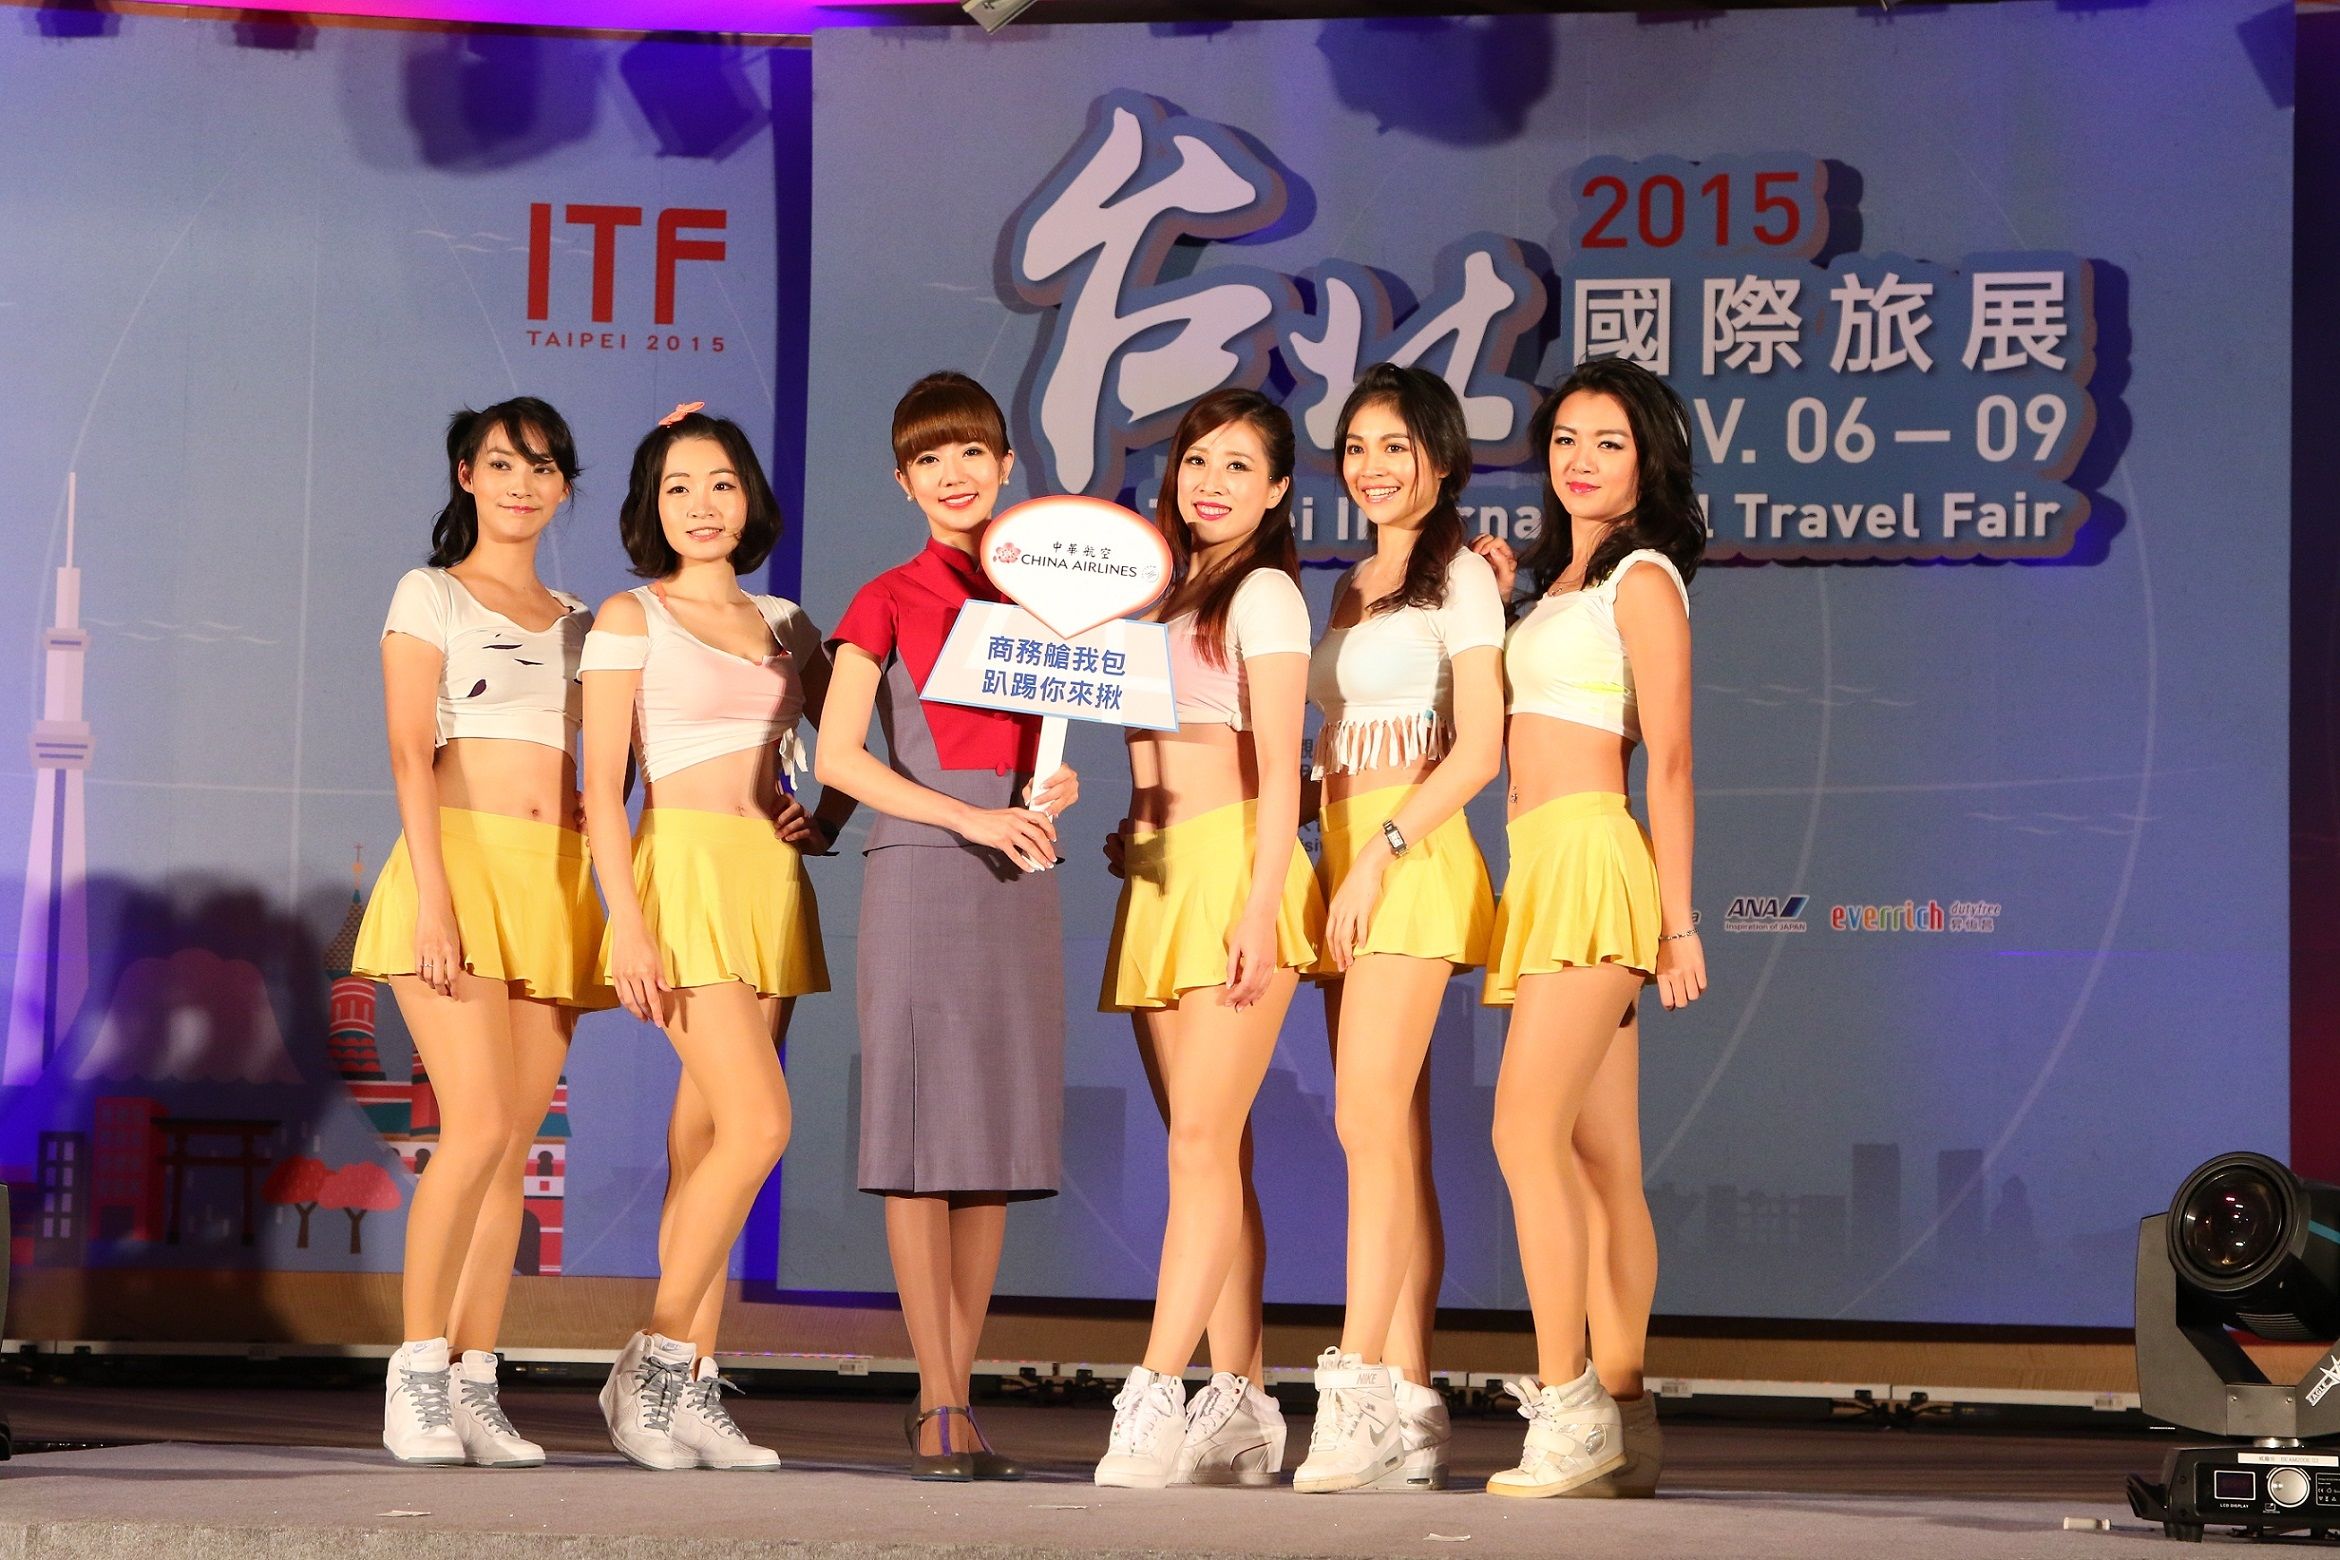 熱力四射的中華航空「CI_Beauties!!」.JPG - 2015台北國際旅展(ITF)11月6日登場「千萬愛旅遊」‧科技智慧 低碳環保 旅遊論壇‧內有大會抽